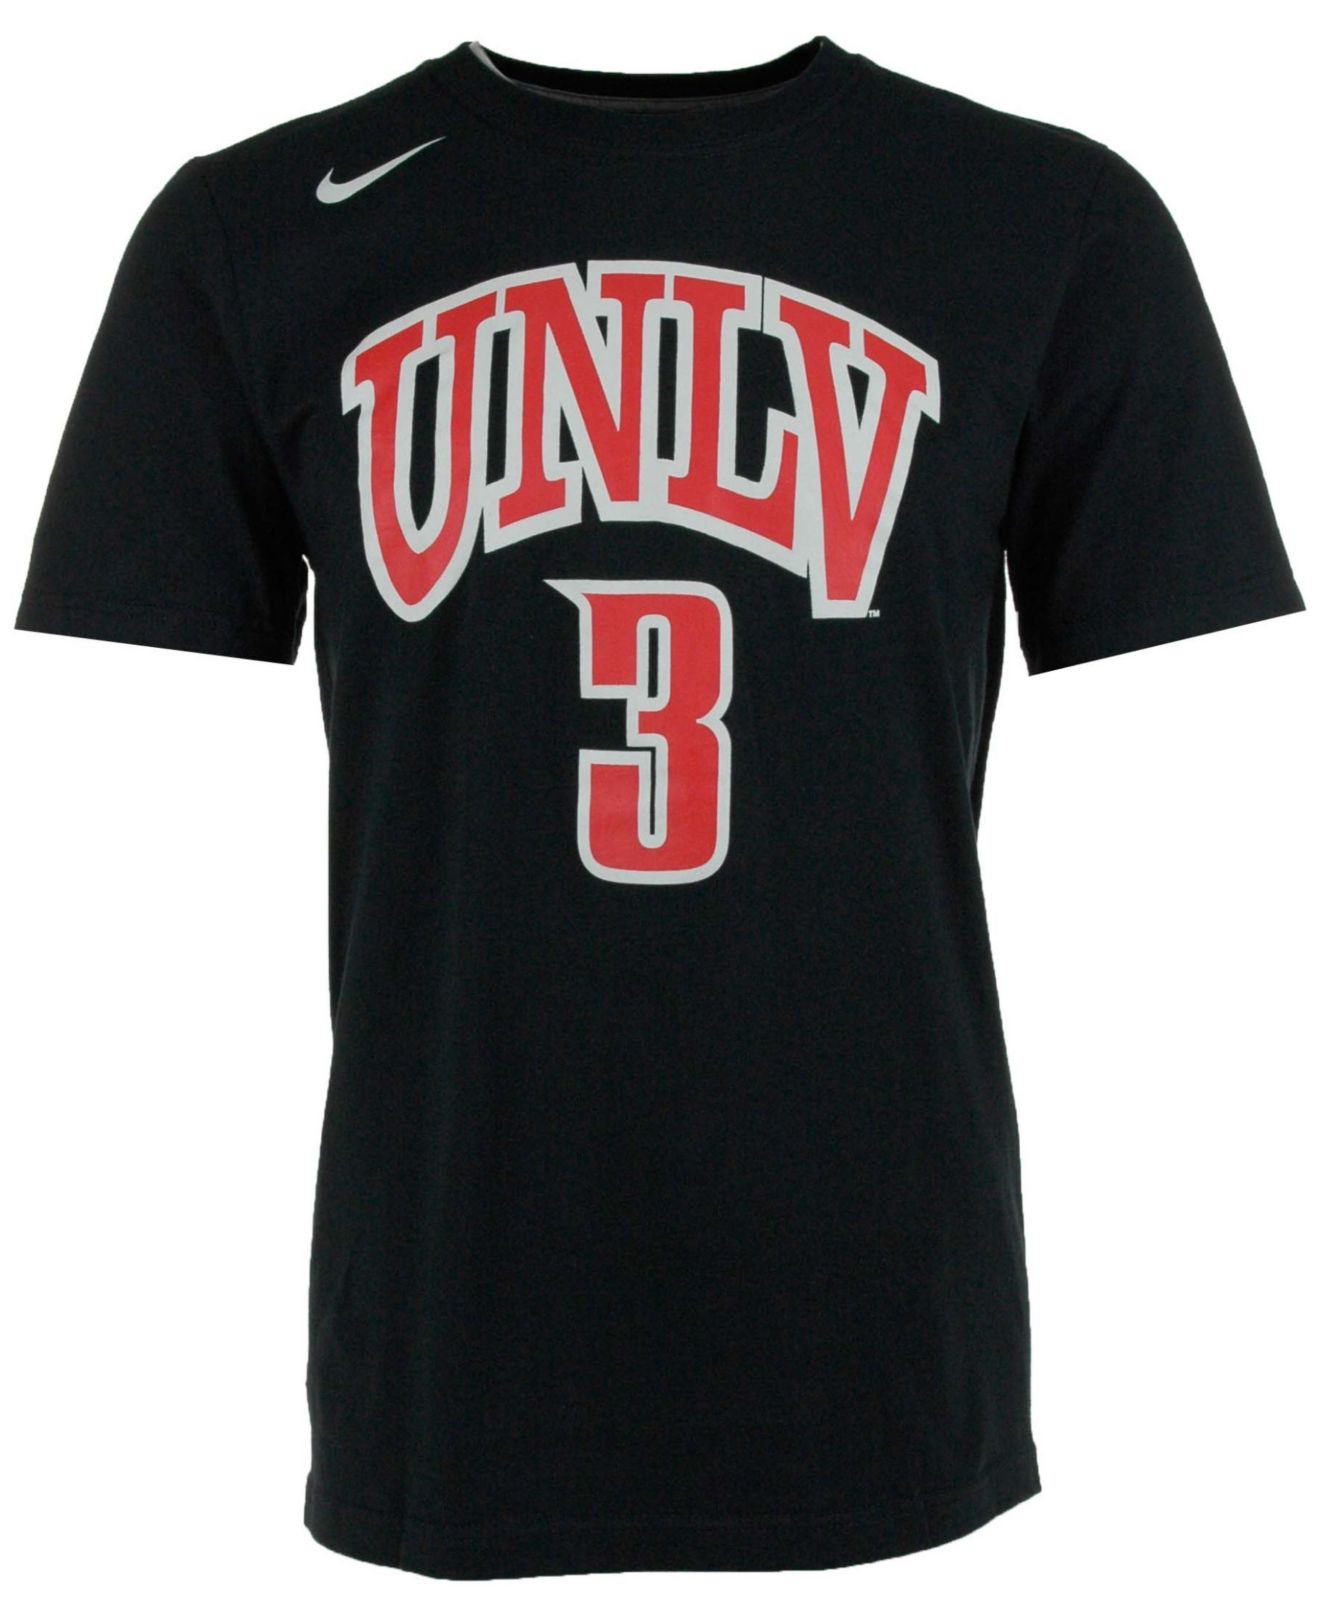 Lyst - Nike Men'S Unlv Runnin Rebels Basketball Player T-Shirt in Black